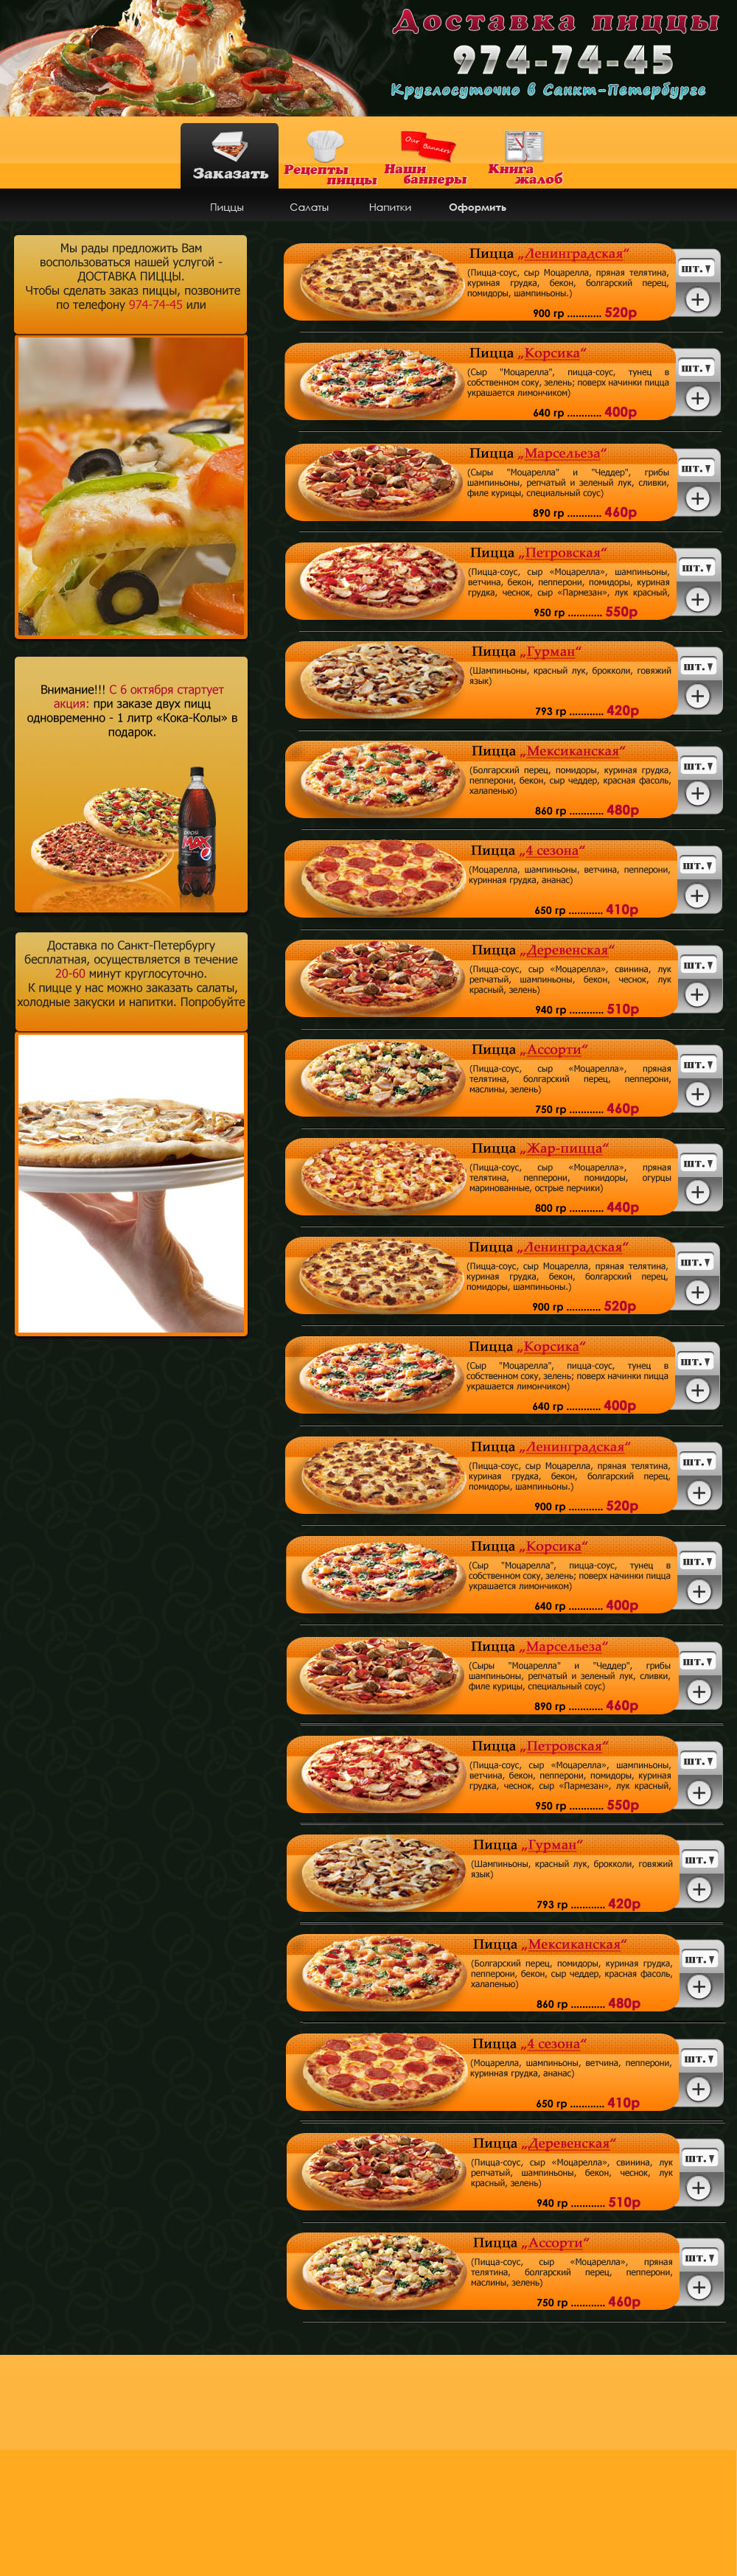 Заказ пиццы